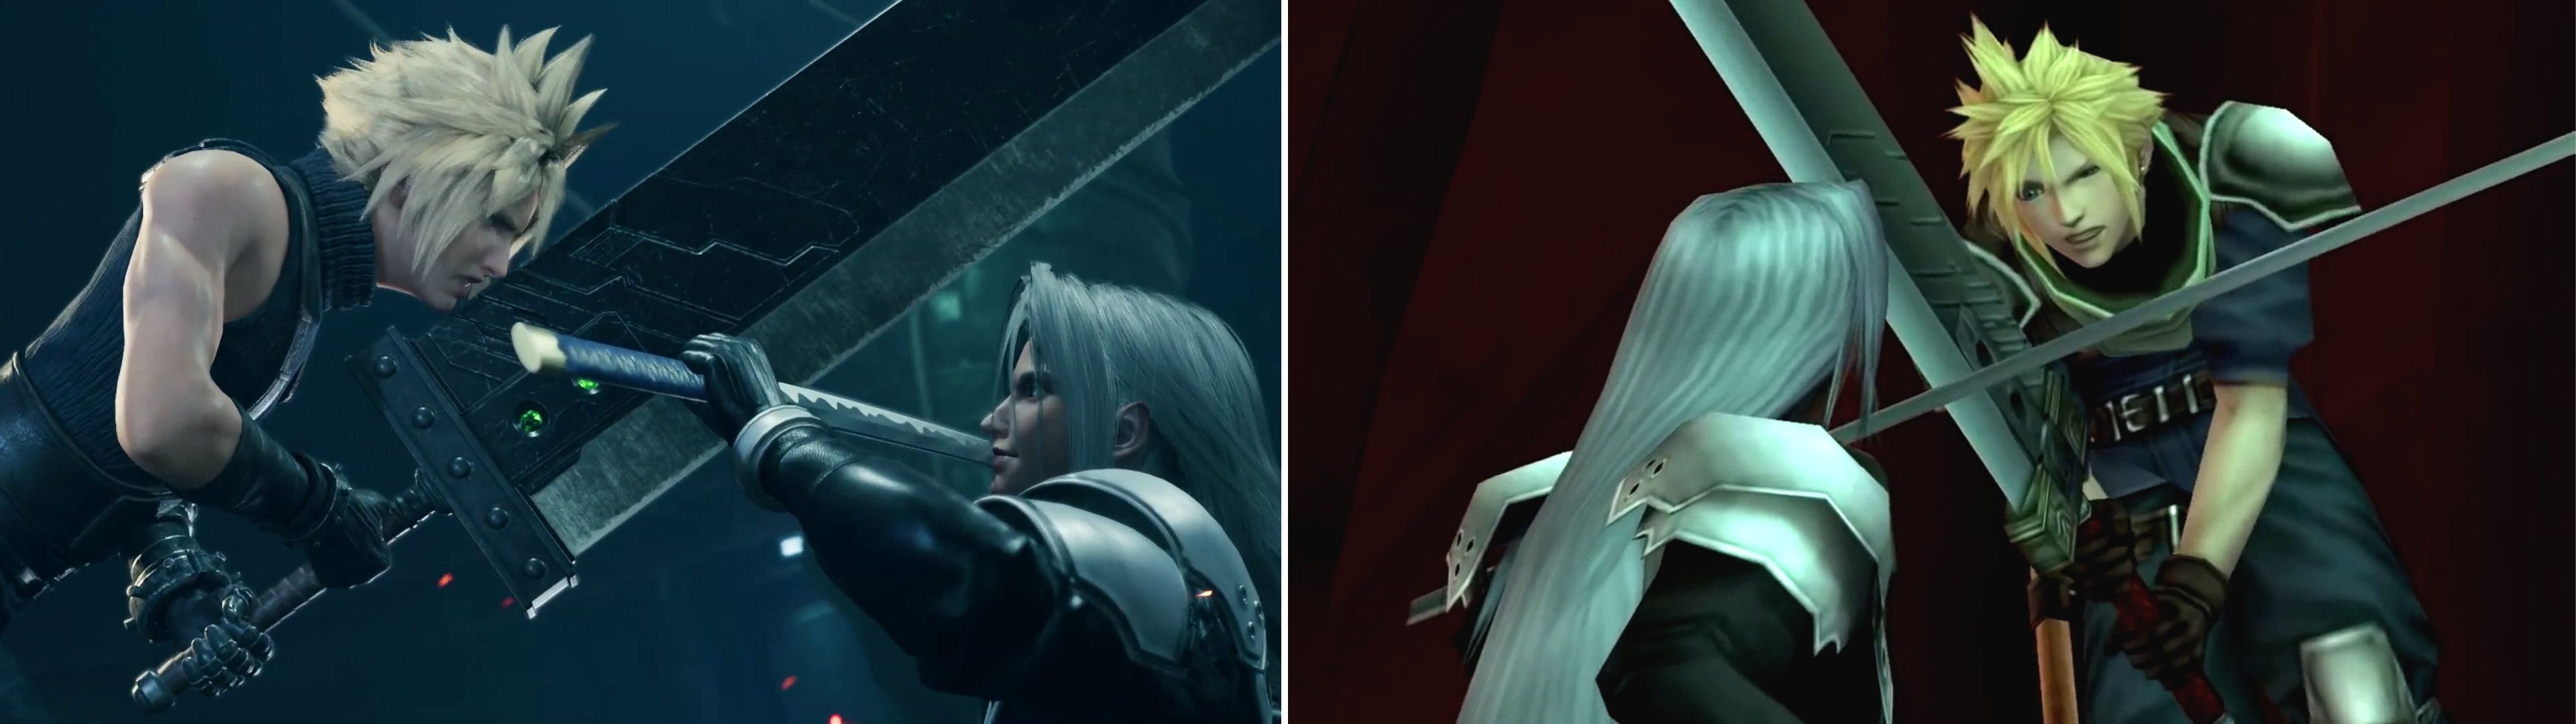 Final Fantasy VII Remake vs. Crisis Core